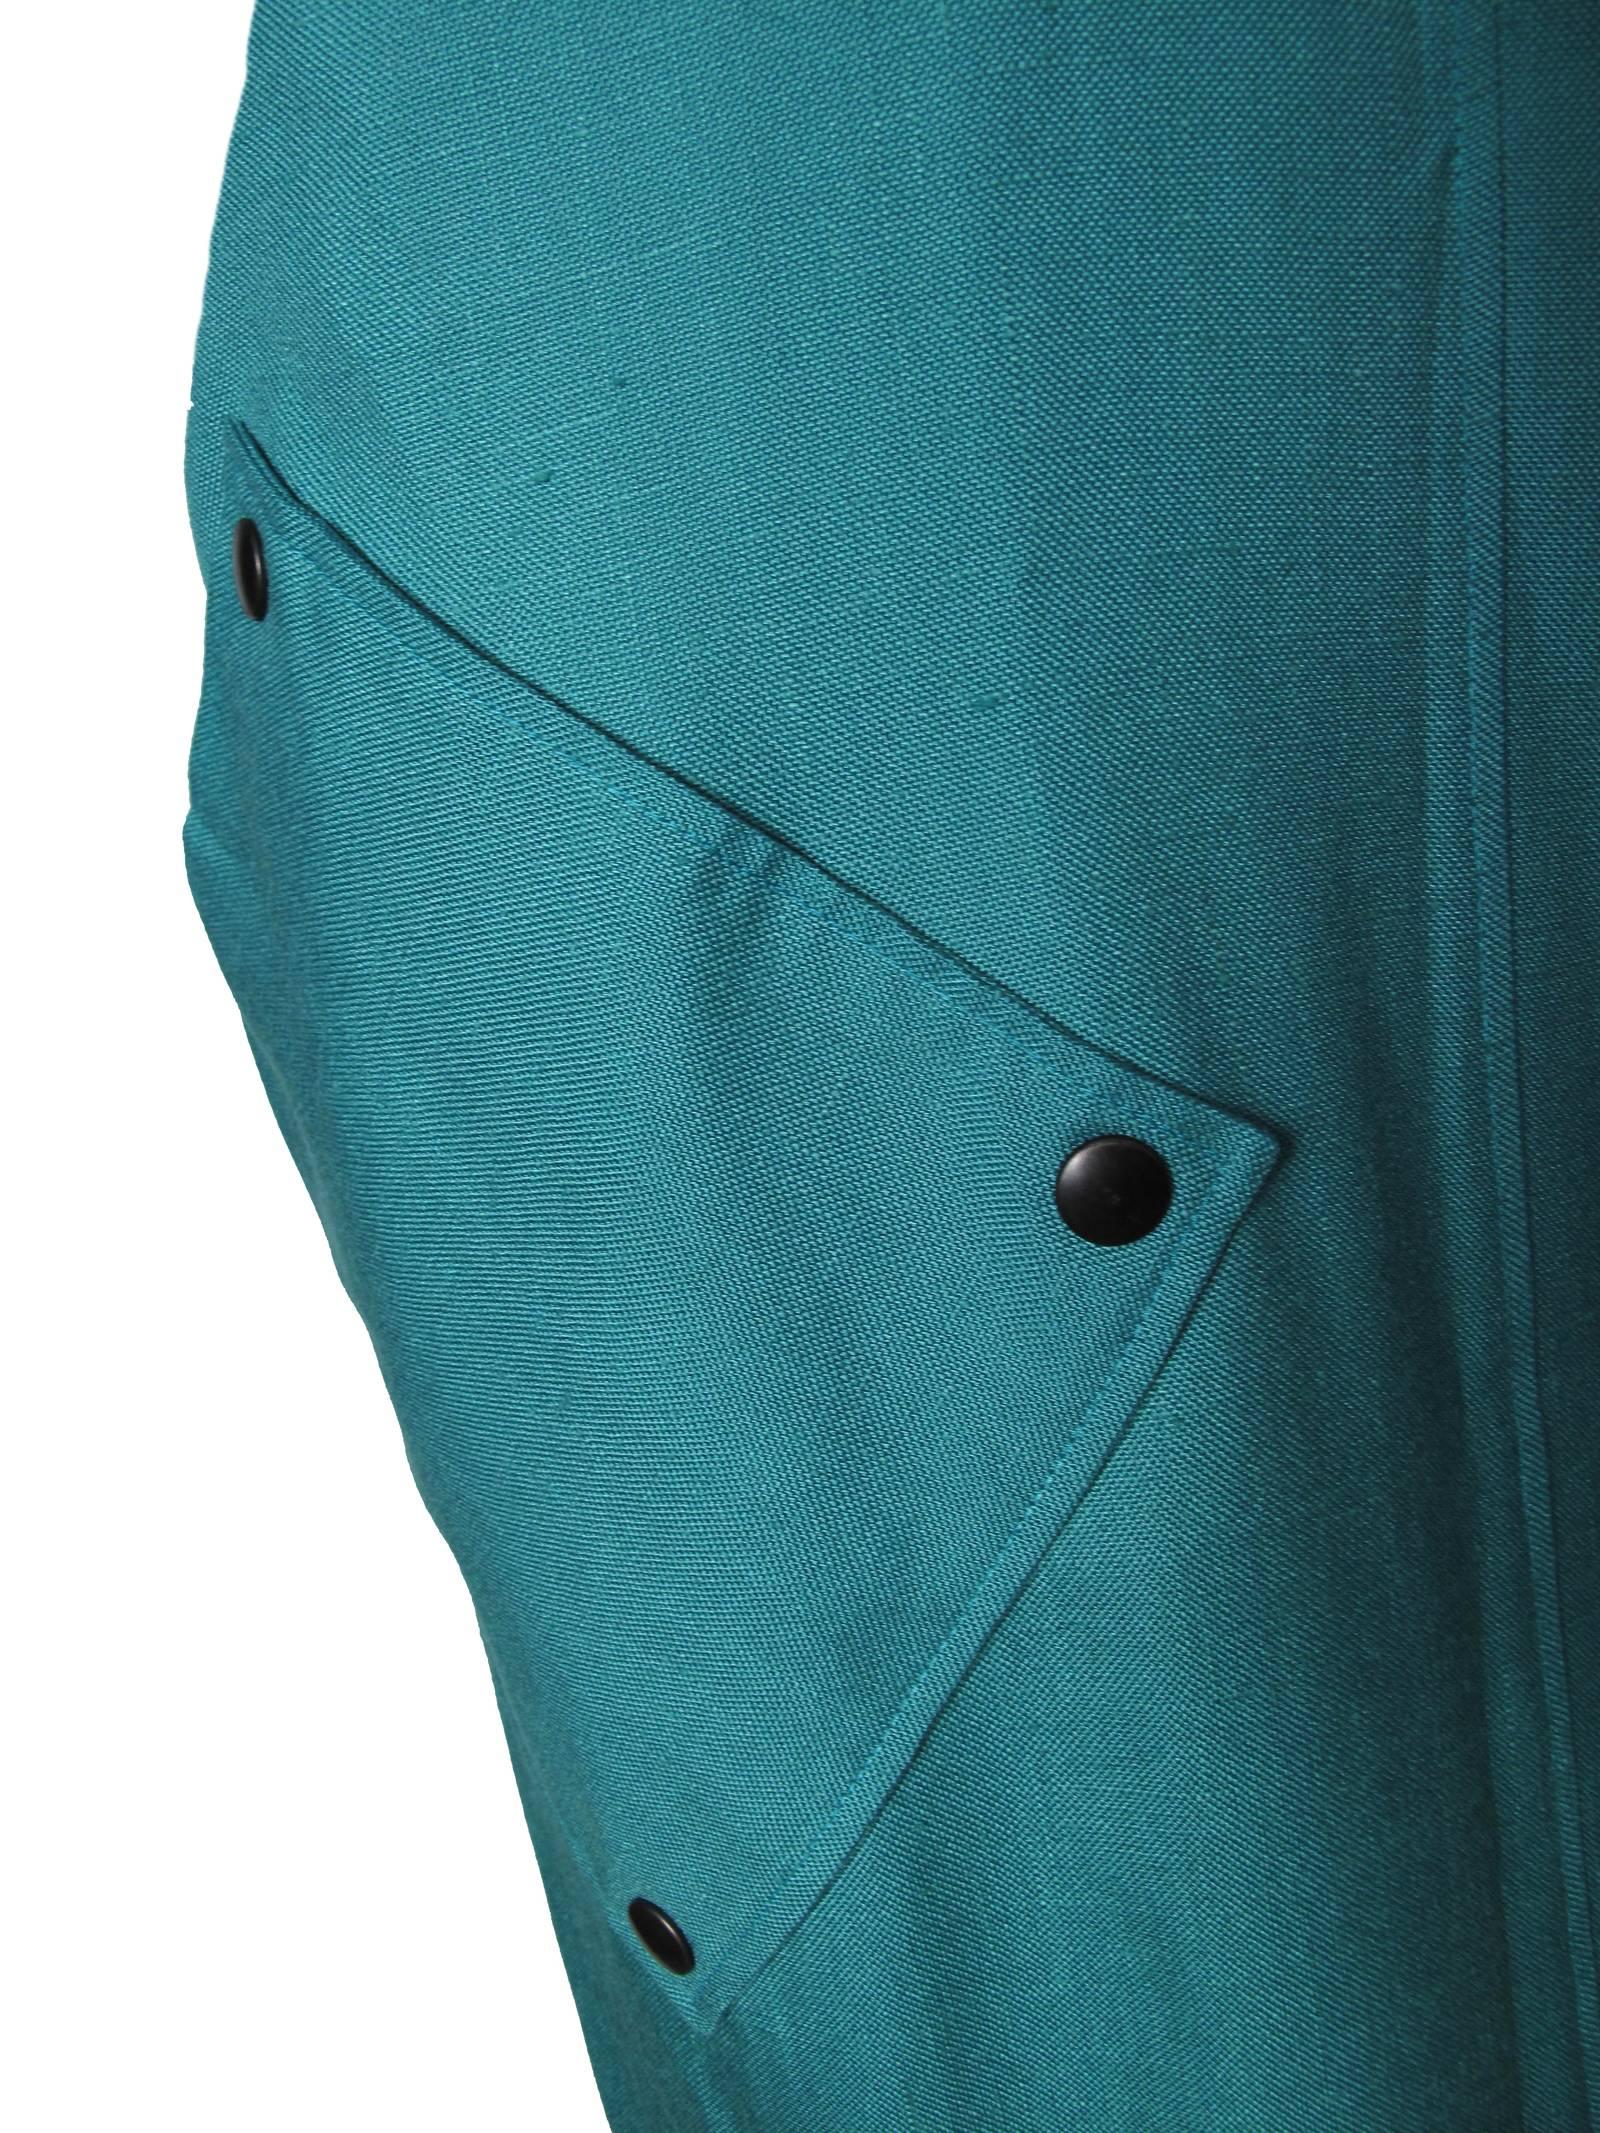 Pierre Cardin Linen Dress Large Pockets  1